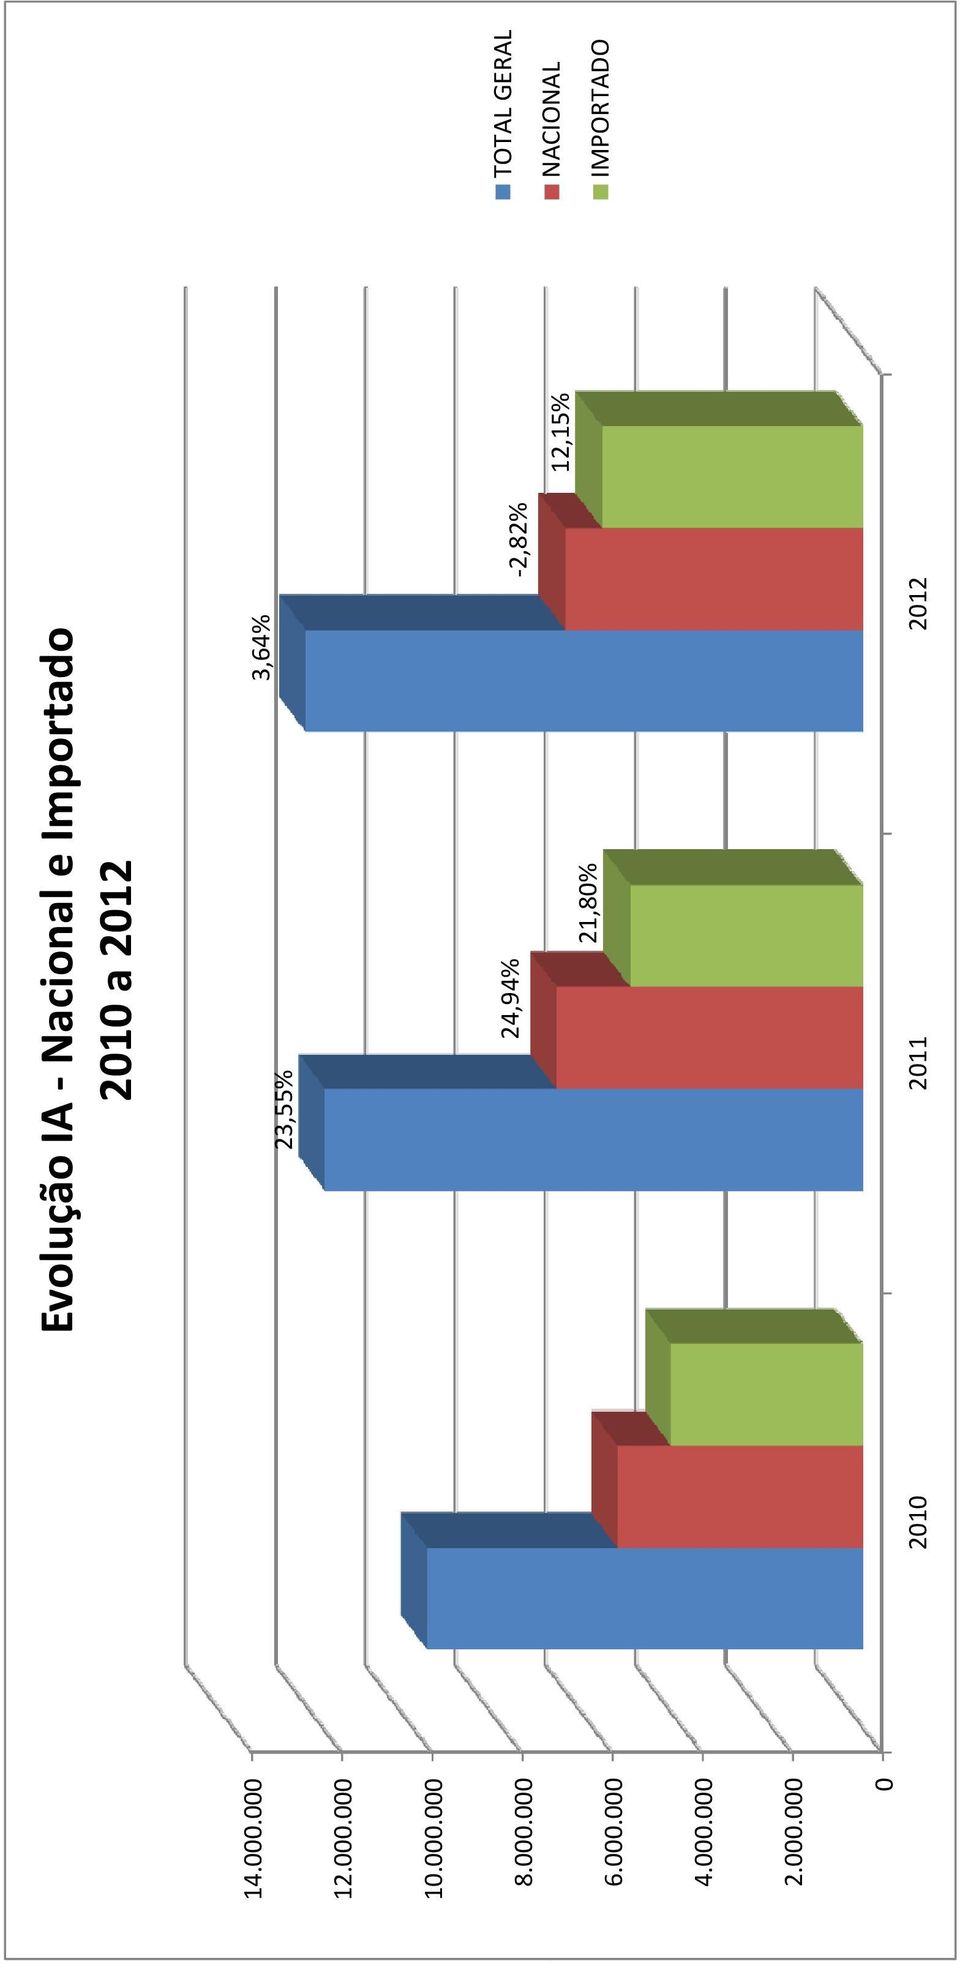 Importado 2010 a 2012 23,55% 3,64% 24,94% 2,82%